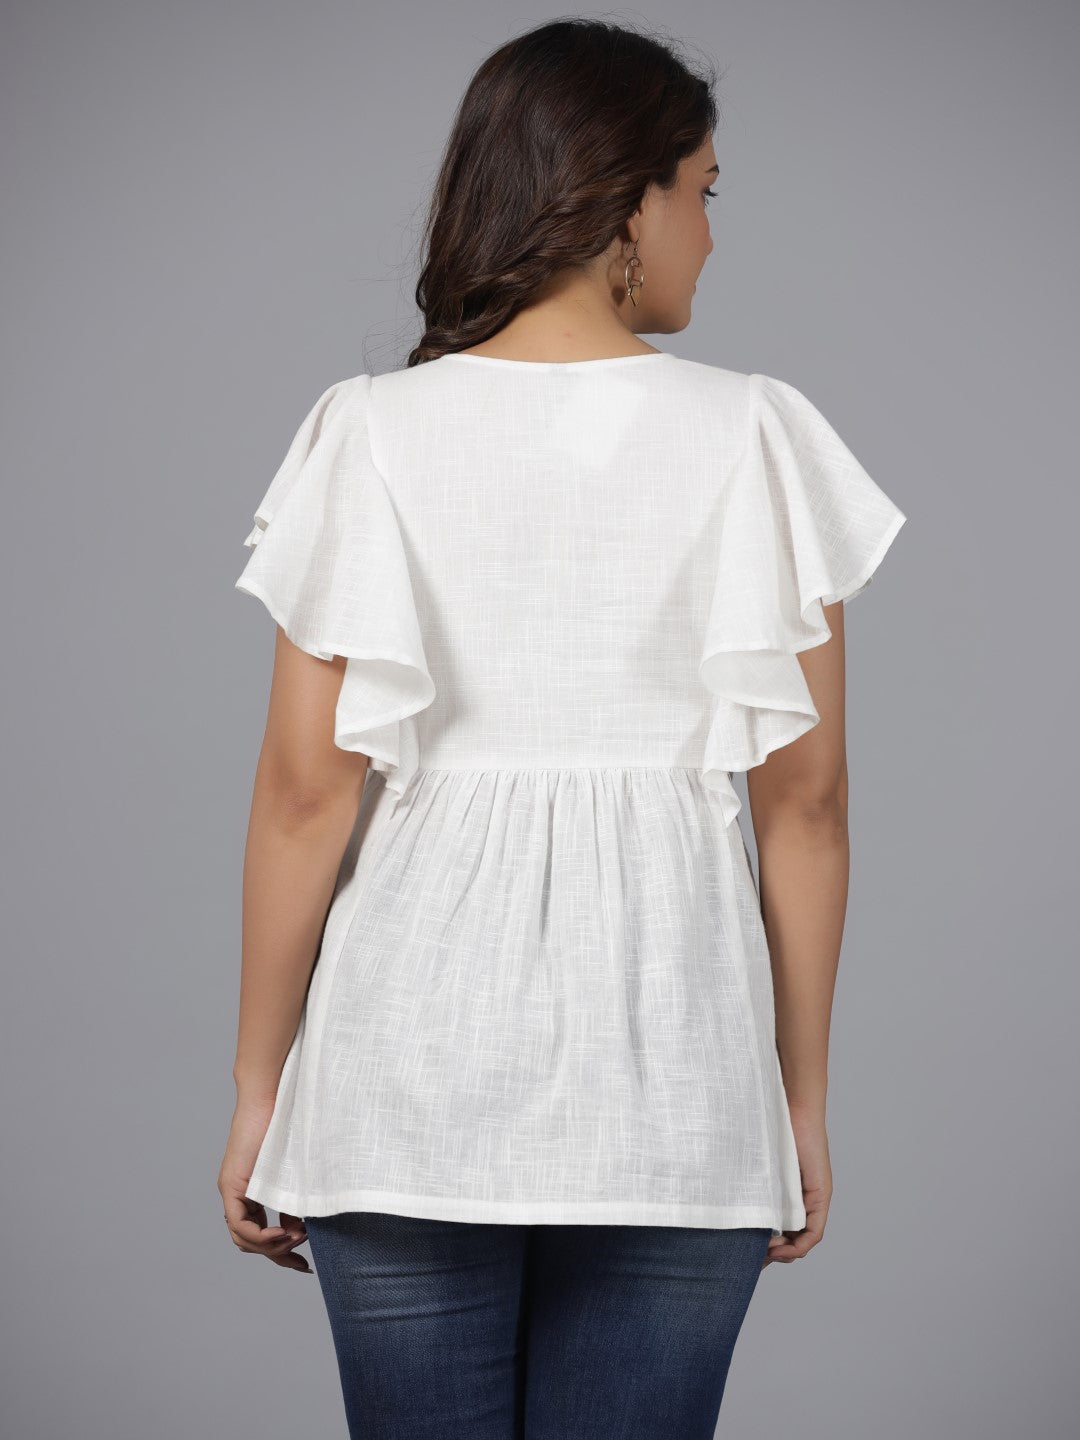 Juniper Women White Cotton Slub Solid with Embroidered Tunic